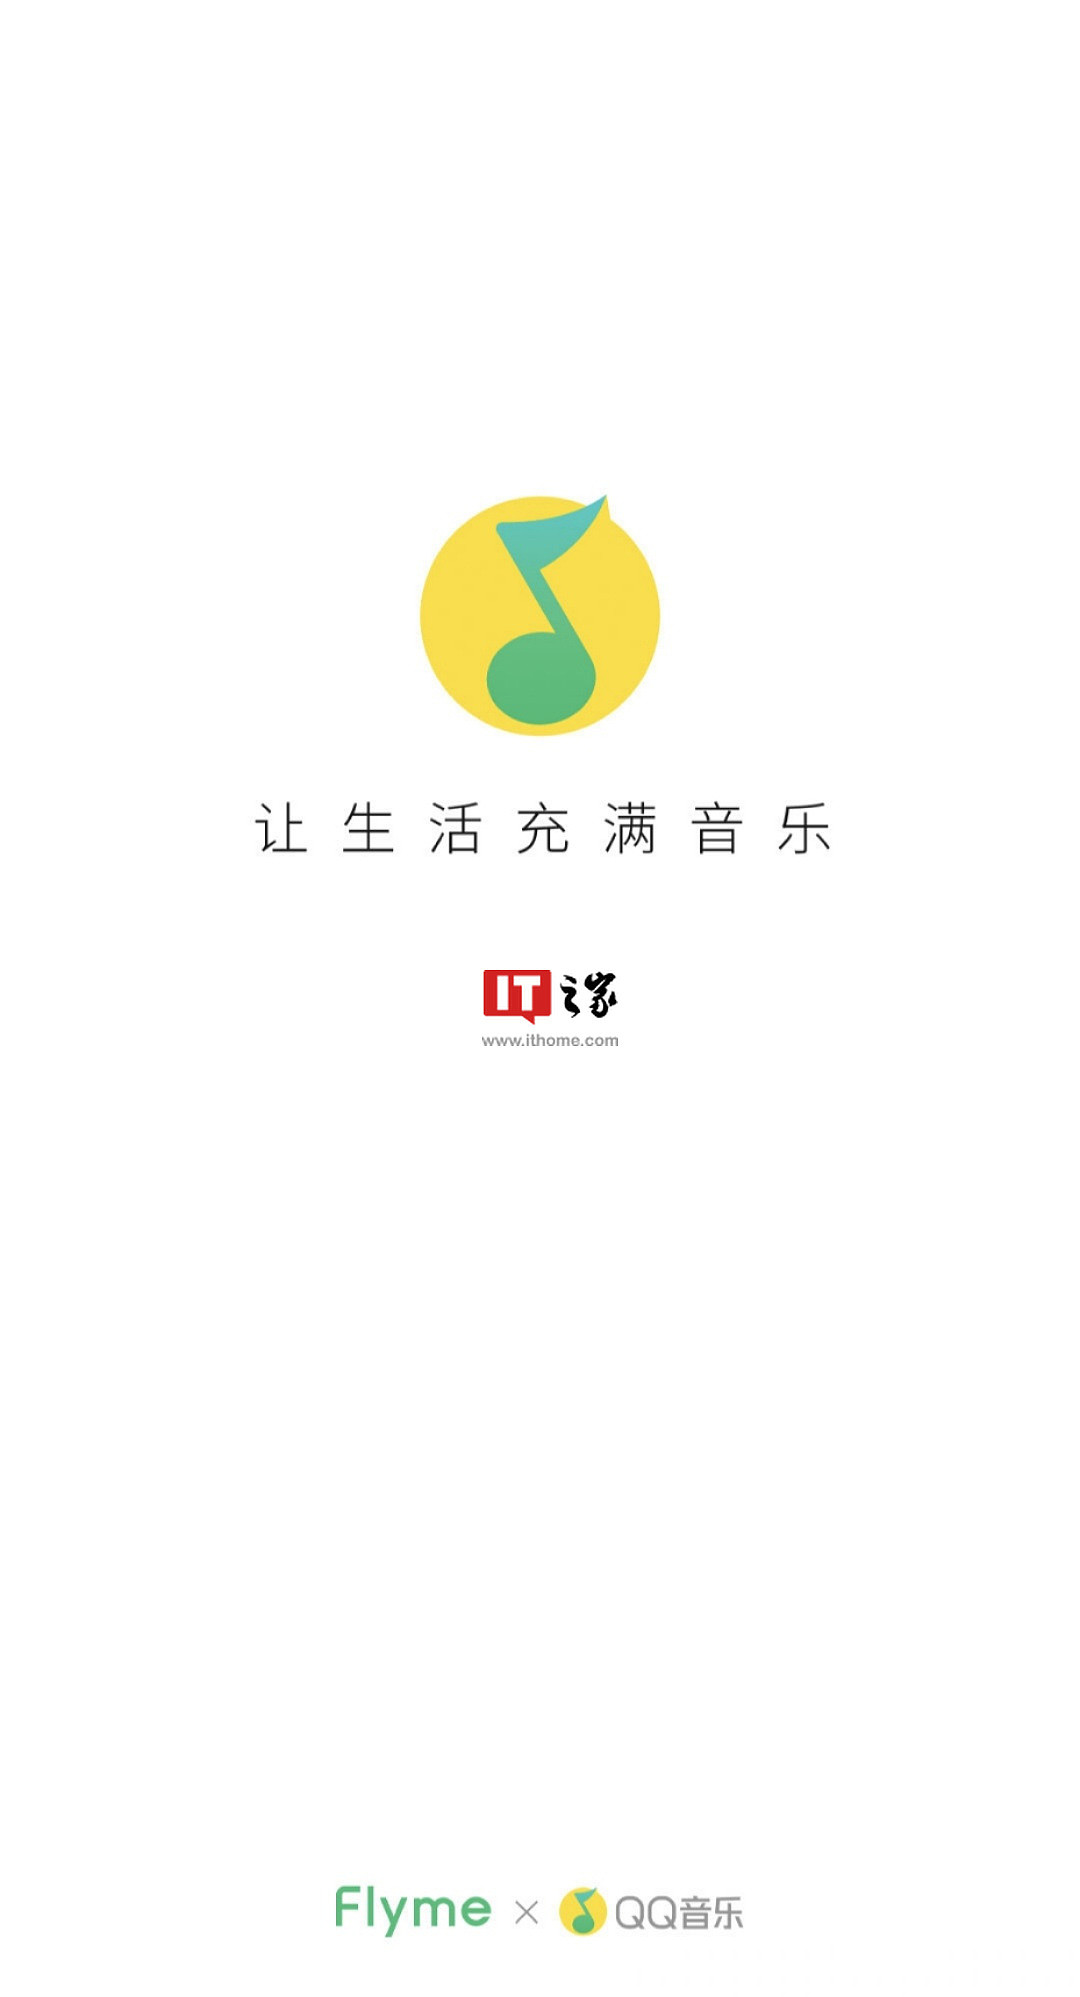 魅族 Flyme 音乐将升级为 QQ 音乐魅族版，新增海量曲库 - 1